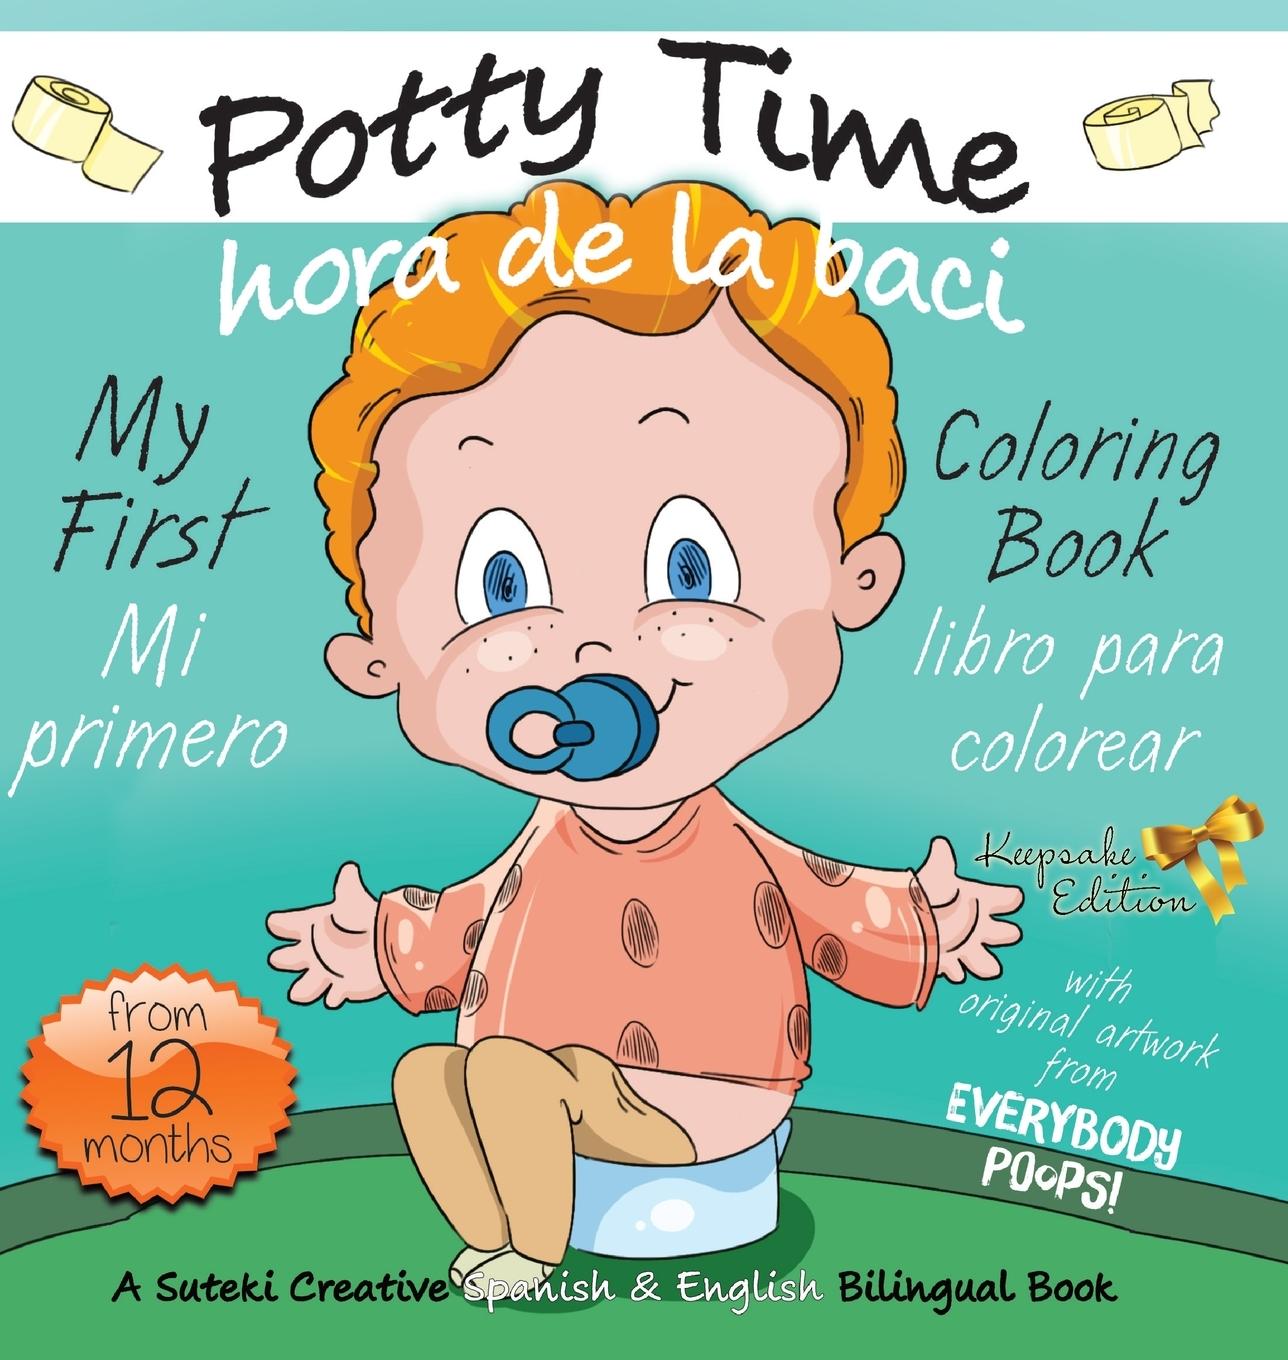 Kniha My First Potty Time Coloring Book / Mi primero hora de la baci libro para colorear 